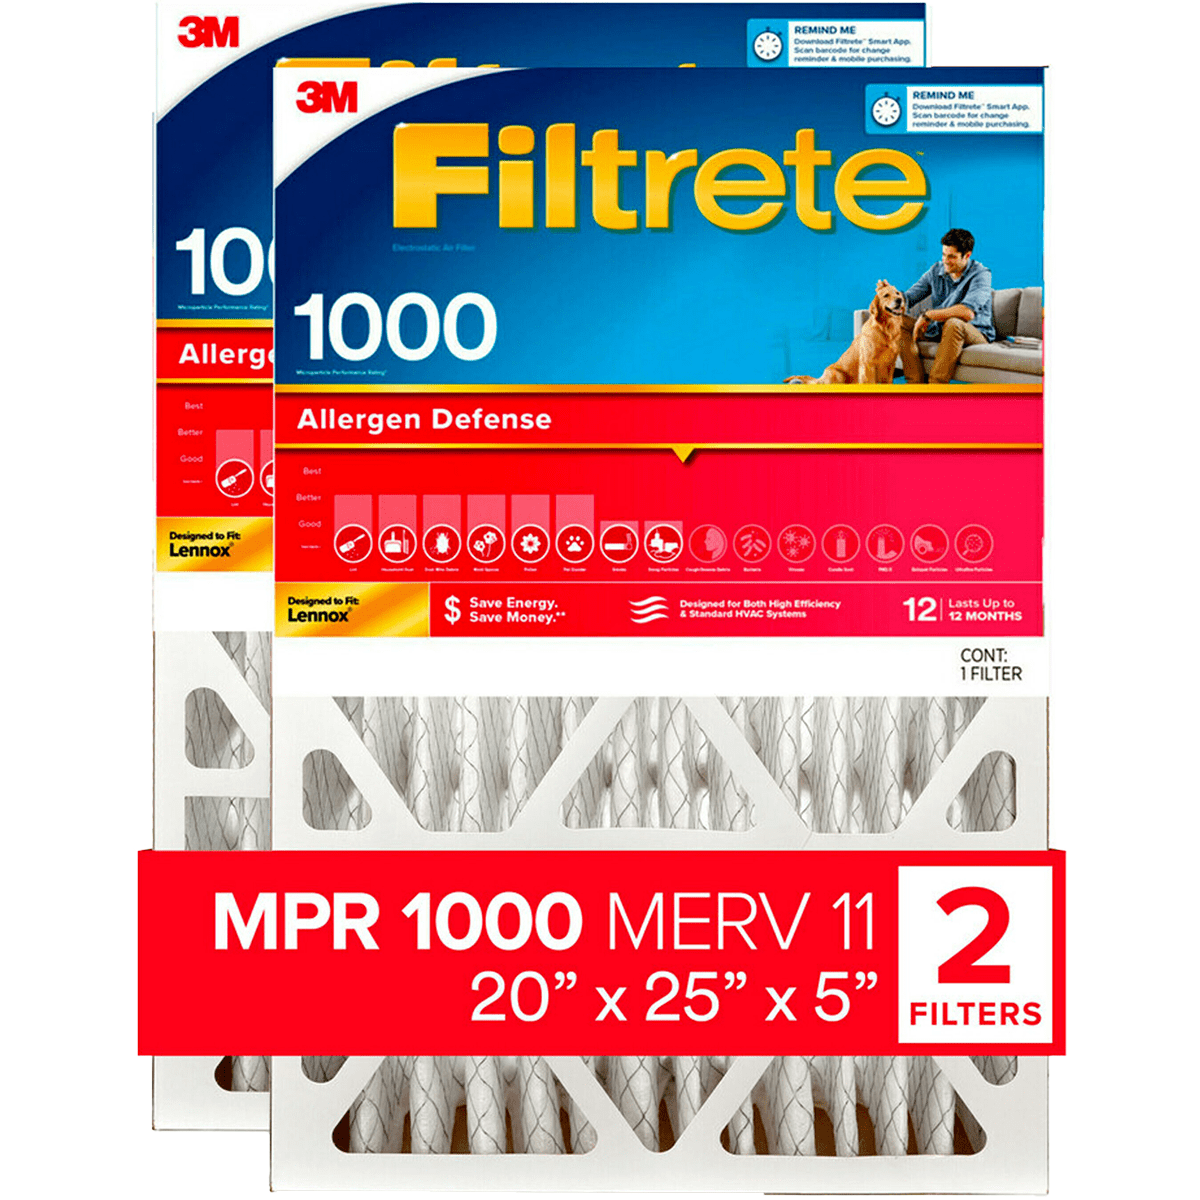 3M Filtrete 5-In. MPR 1000 Allergen Defense Furnace Filters - 20x25x5 - 2-Pack